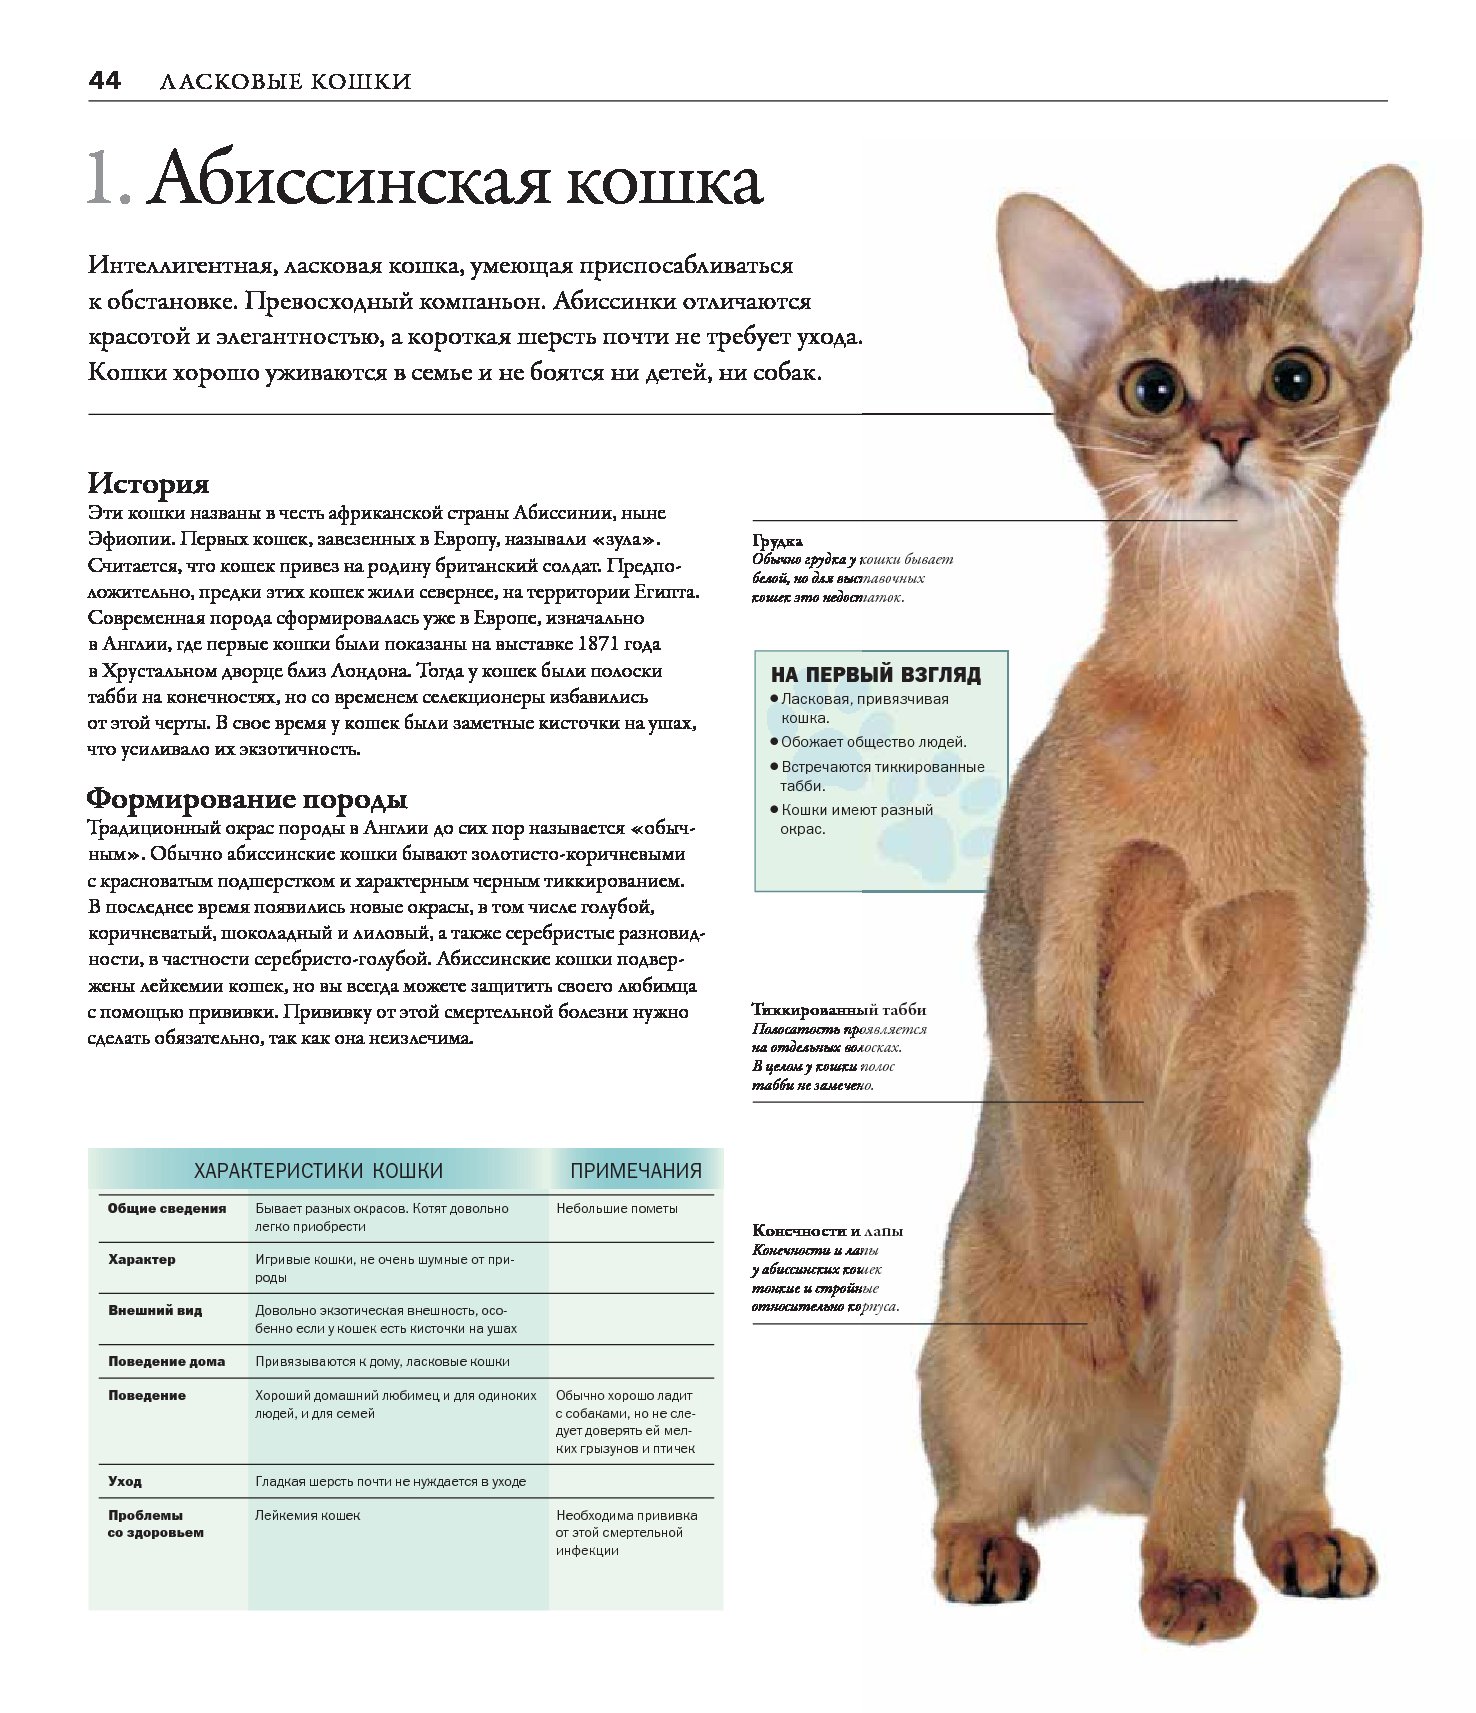 Болезни пород кошек. Описать породу кошки Абиссинская. Абиссинская кошка описание породы. Норма веса Абиссинской кошки. Абиссинская кошка стандарт.